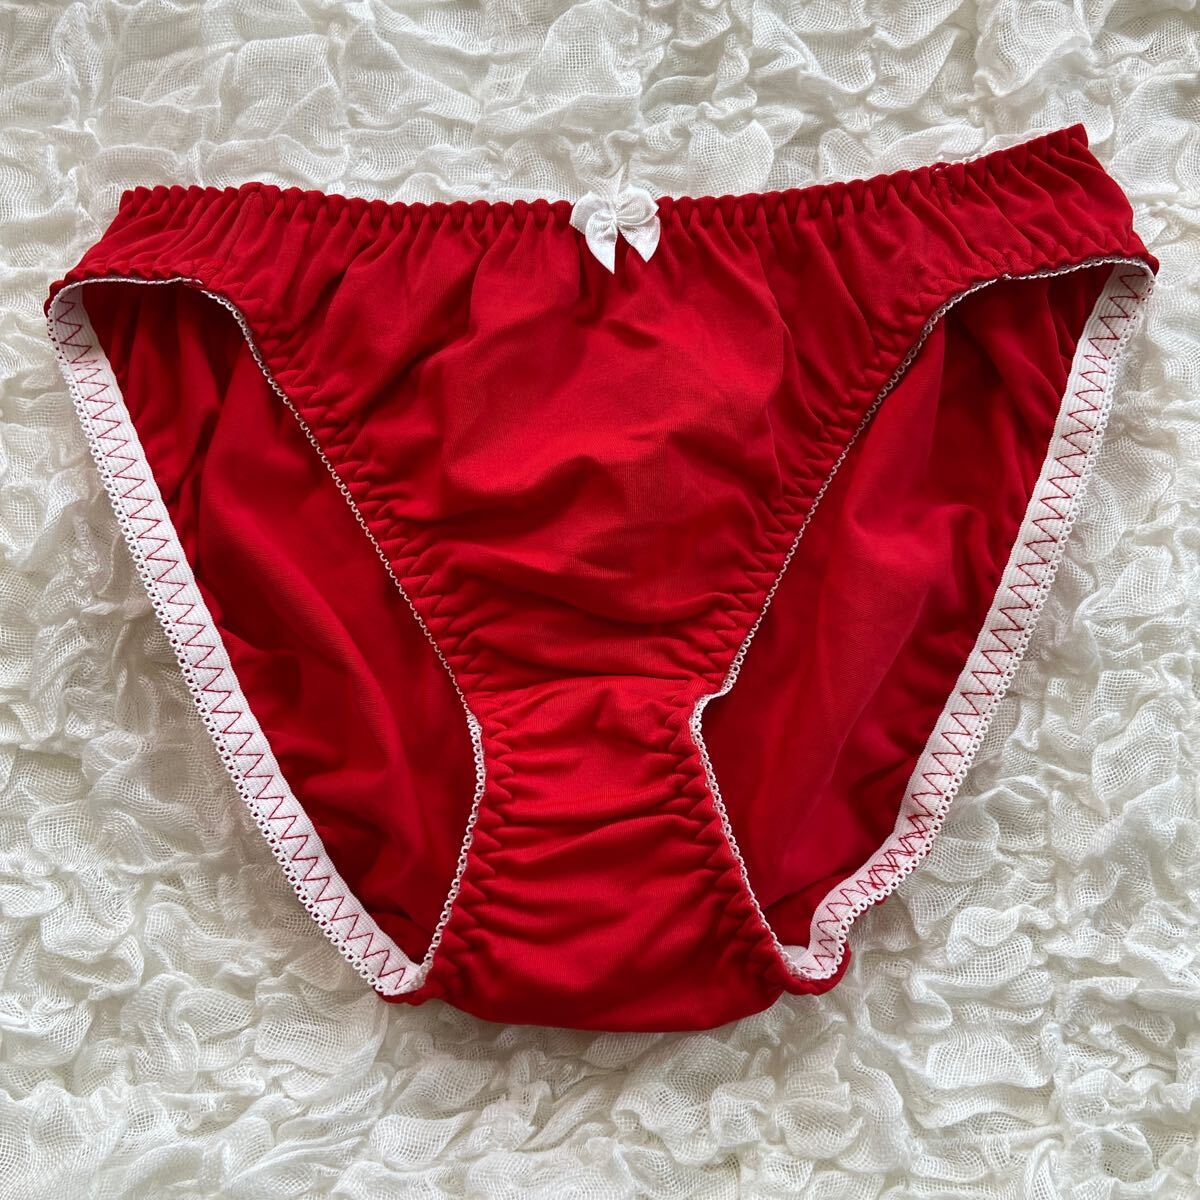 M レディース ショーツ パンツ パンティ ランジェリー インナーウェア 赤 レッド リボンの画像1